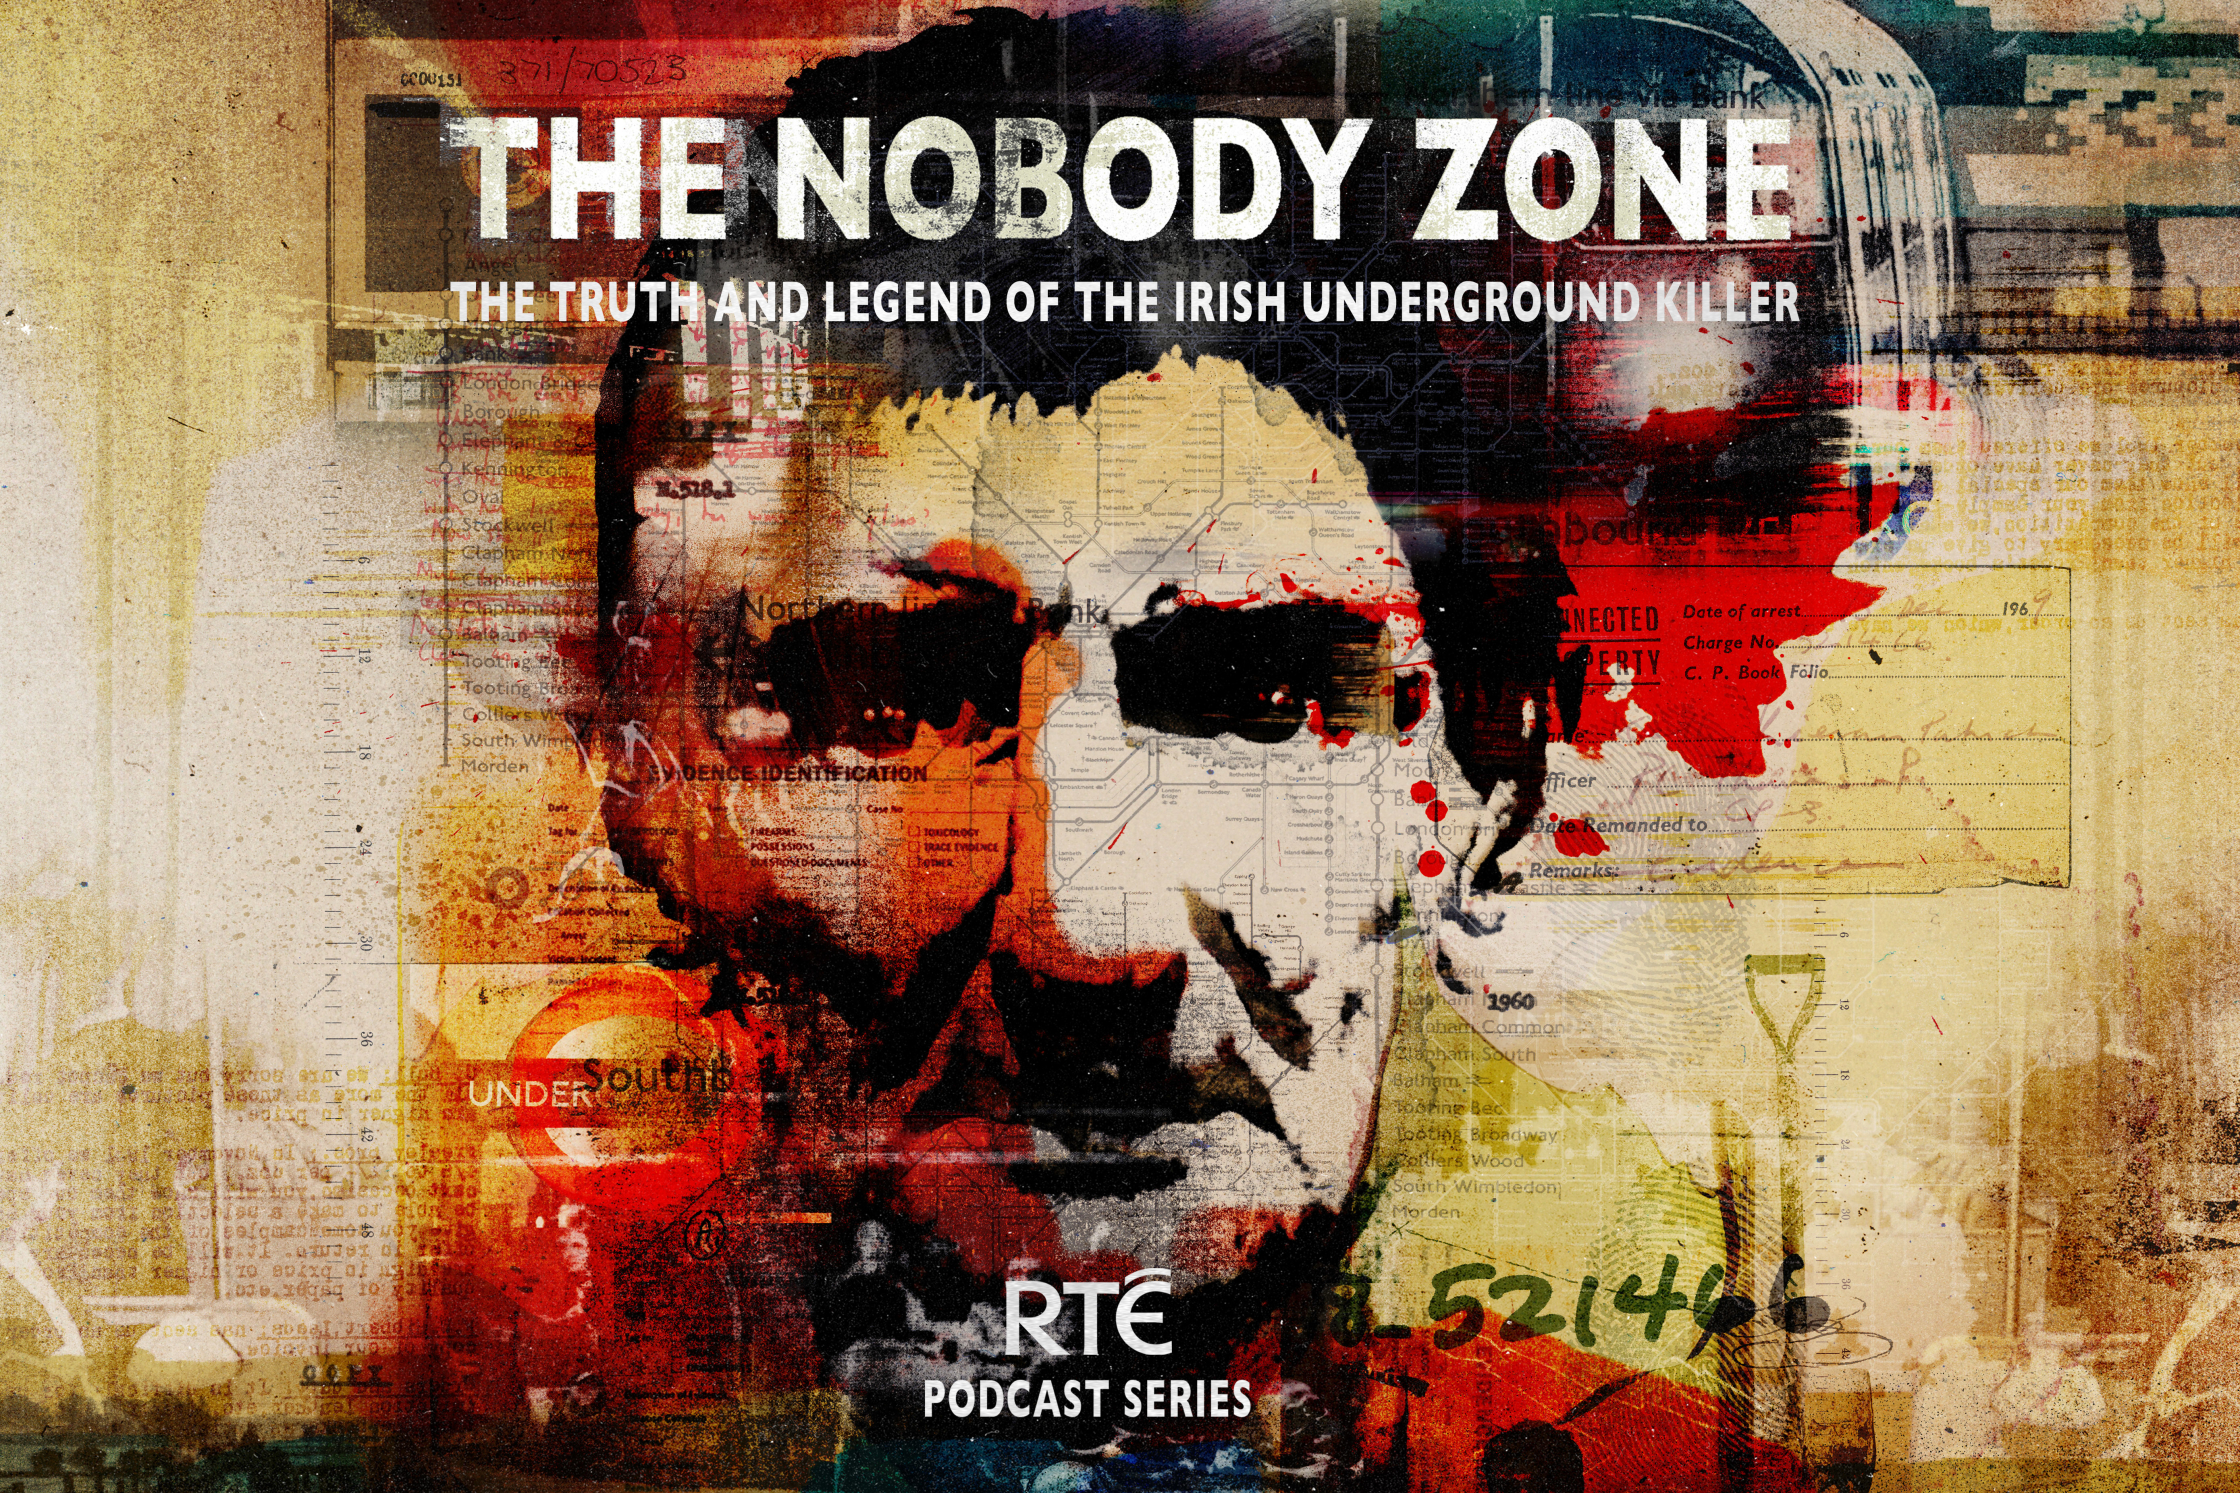 RTÉ_'Nobody Zone' Podcast_flyposter.jpg